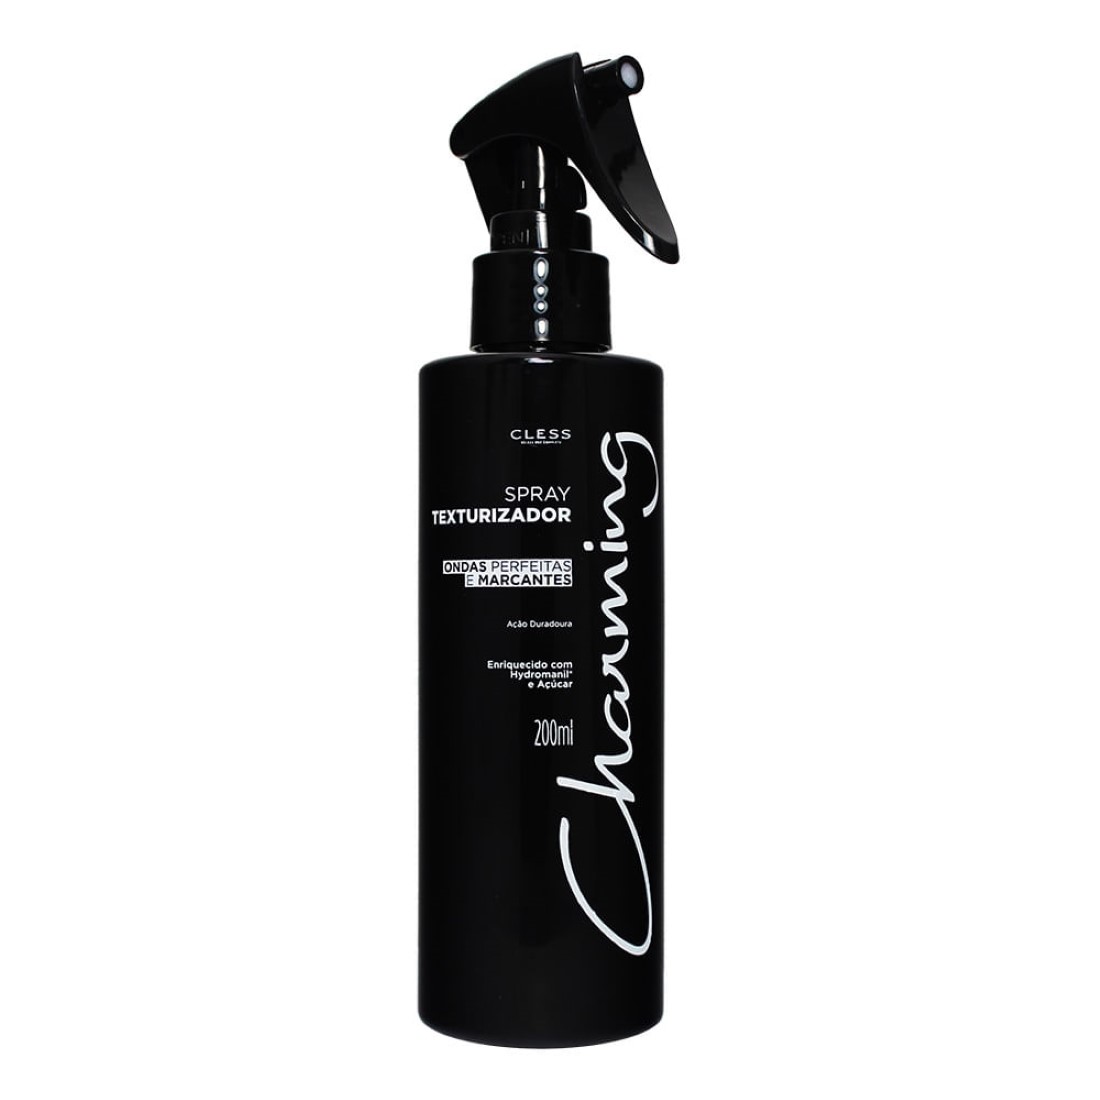 Spray Texturizador 200ml - Charming